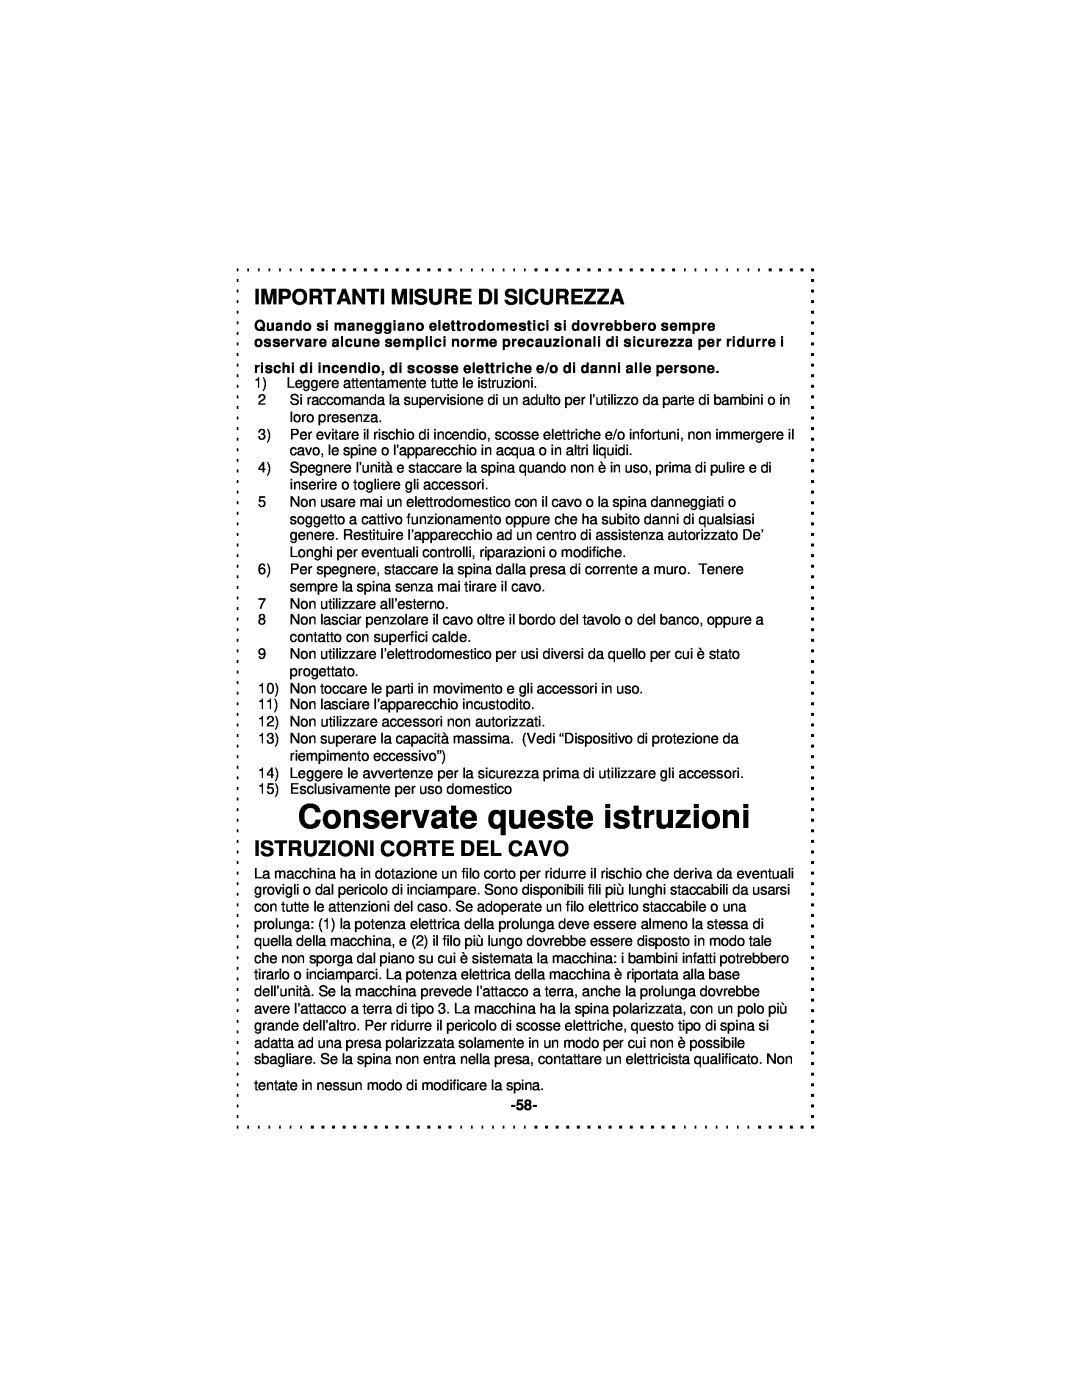 DeLonghi DSM5 - 7 Series Conservate queste istruzioni, Importanti Misure Di Sicurezza, Istruzioni Corte Del Cavo 